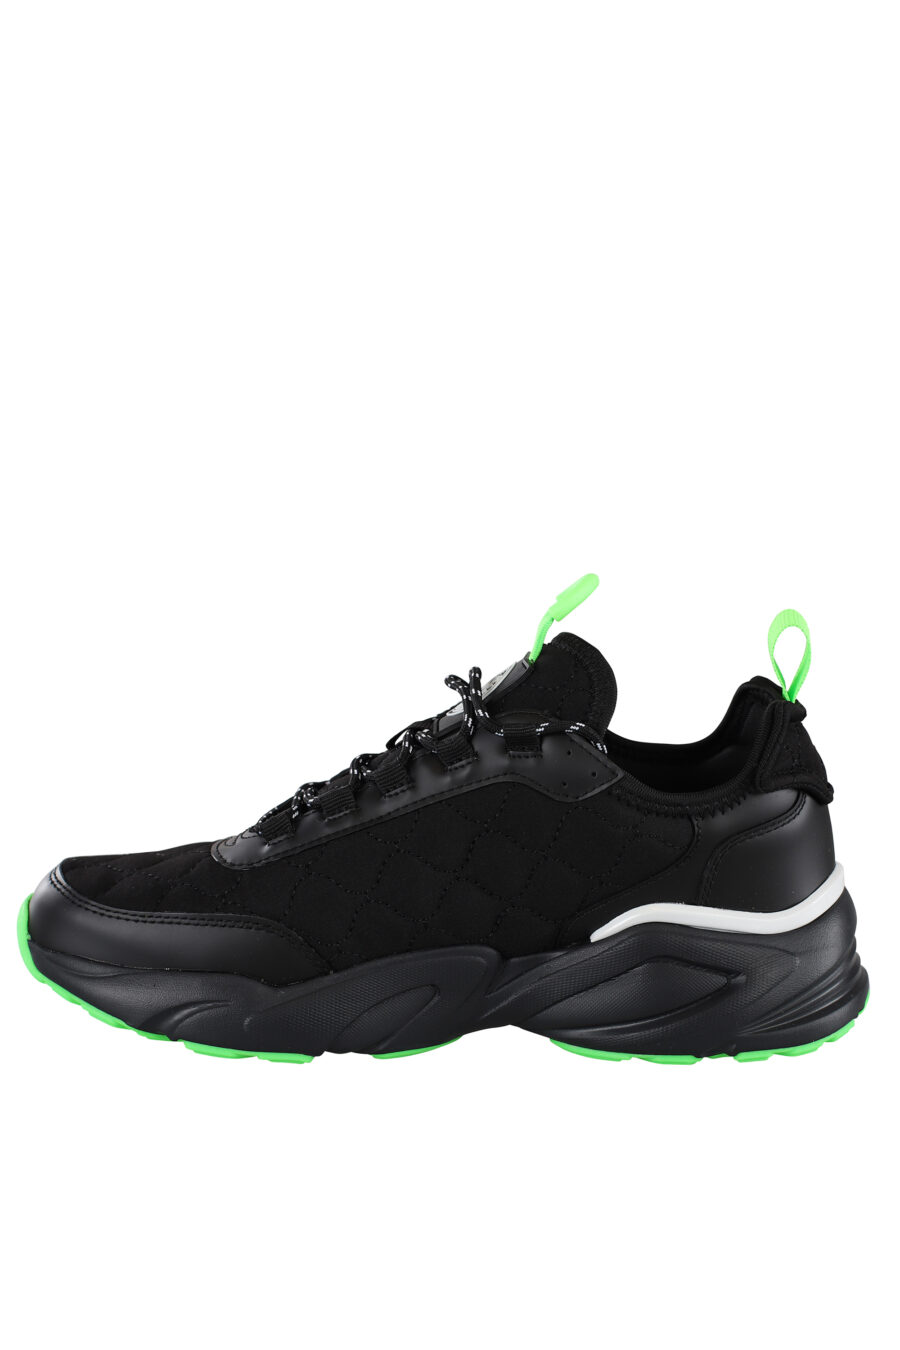 Zapatillas negras con detalles verdes y maxilogo blanco - IMG 6895